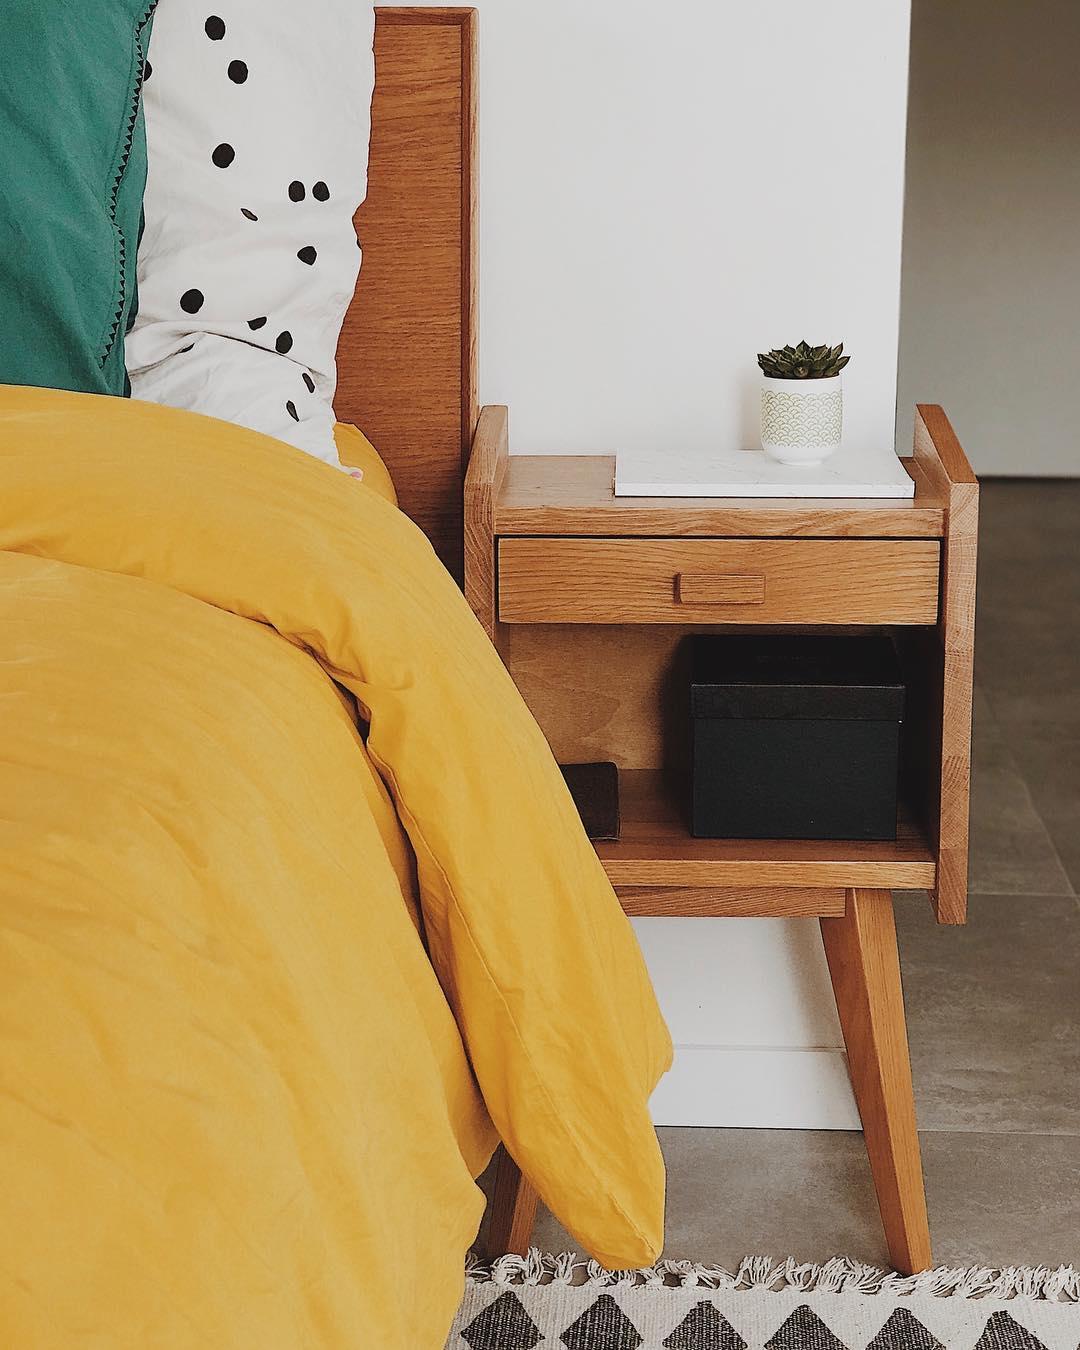 La Redoute sur Twitter : "Touche vintage dans la chambre avec le chevet  Quilda. 📷@jlndrd #home #bedroom #vintage #laredouteinterieurs Chevet  vintage : Quilda 506922402 https://t.co/HkNmStwlb1" / Twitter